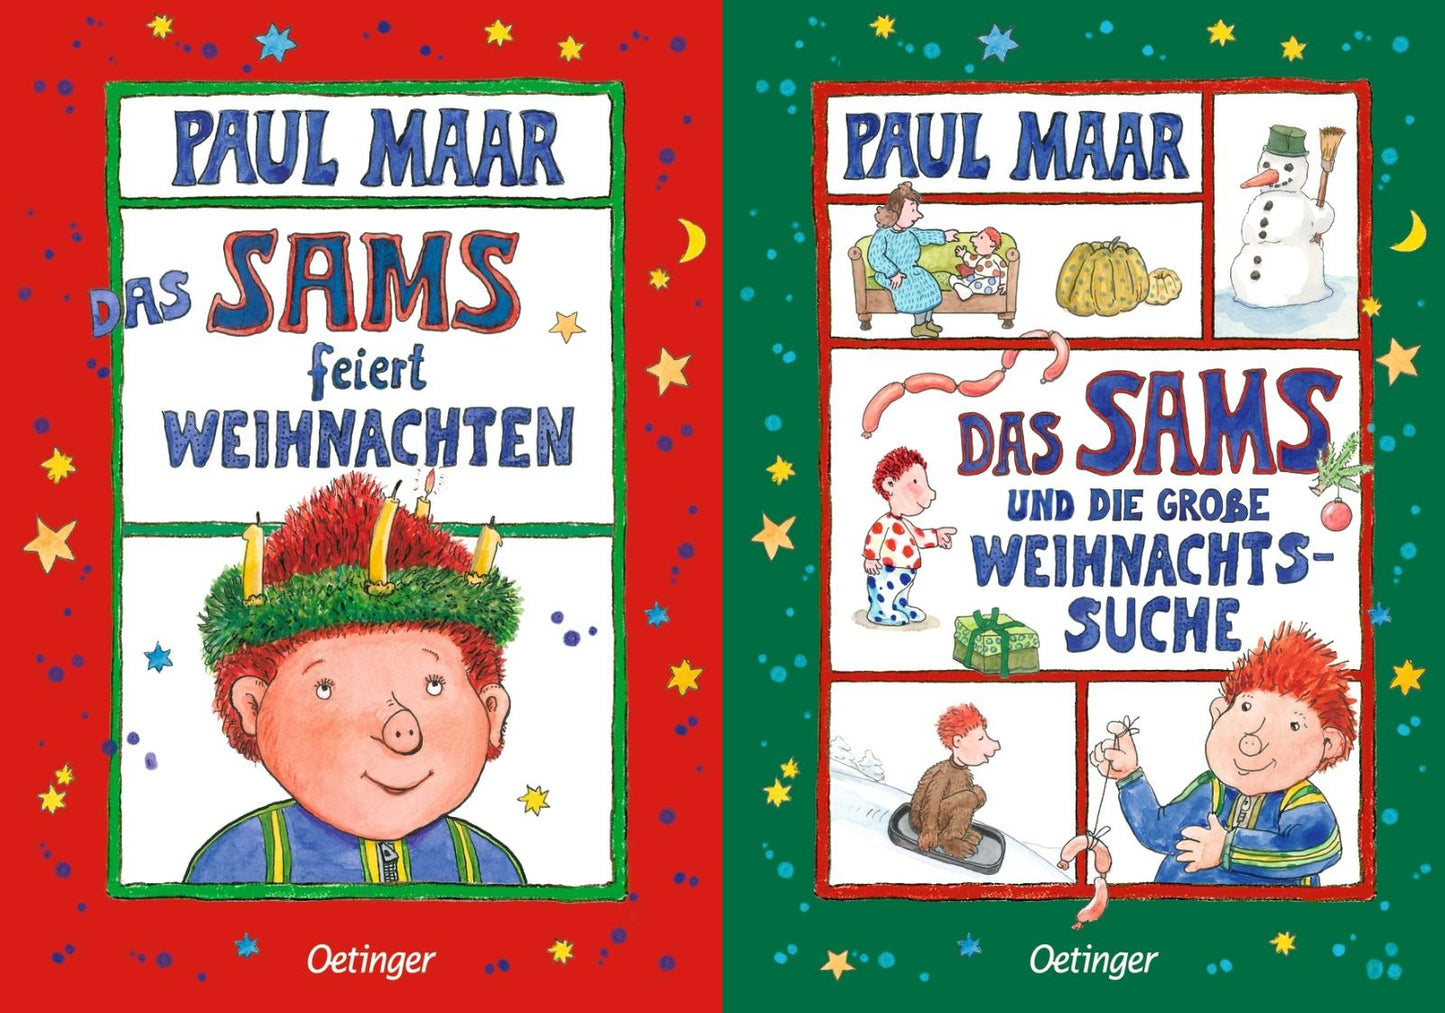 Weihnachten mit dem Sams: 2 Bücher im Set + 1 exklusives Postkartenset